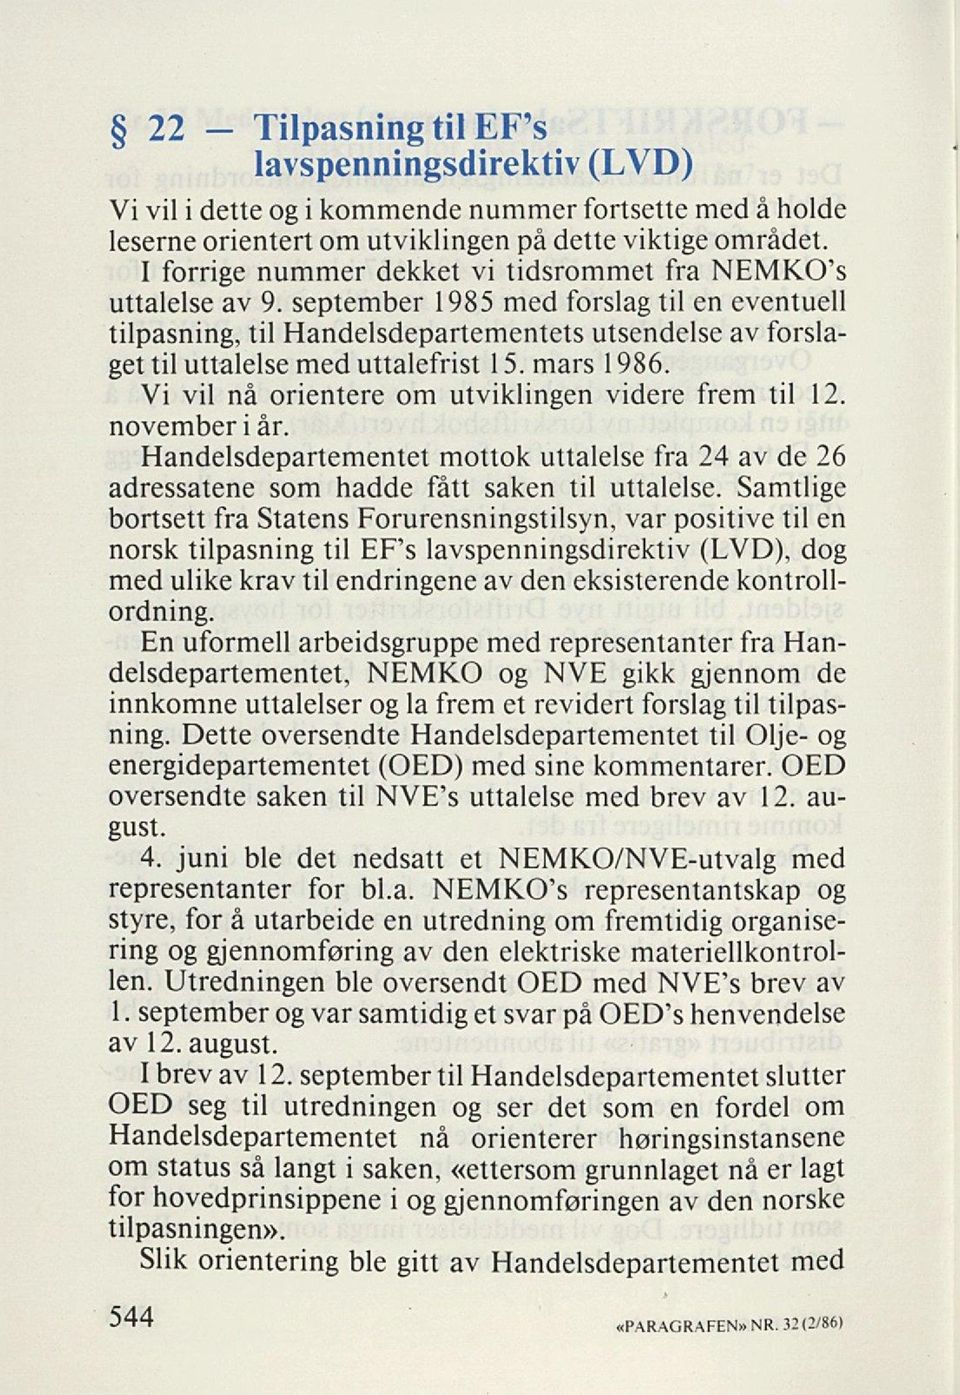 september 1985 med forslag til en eventuell tilpasning, til Handelsdepartementets utsendelse av forsla get til uttalelse med uttalefrist 1 5. mars 1986.